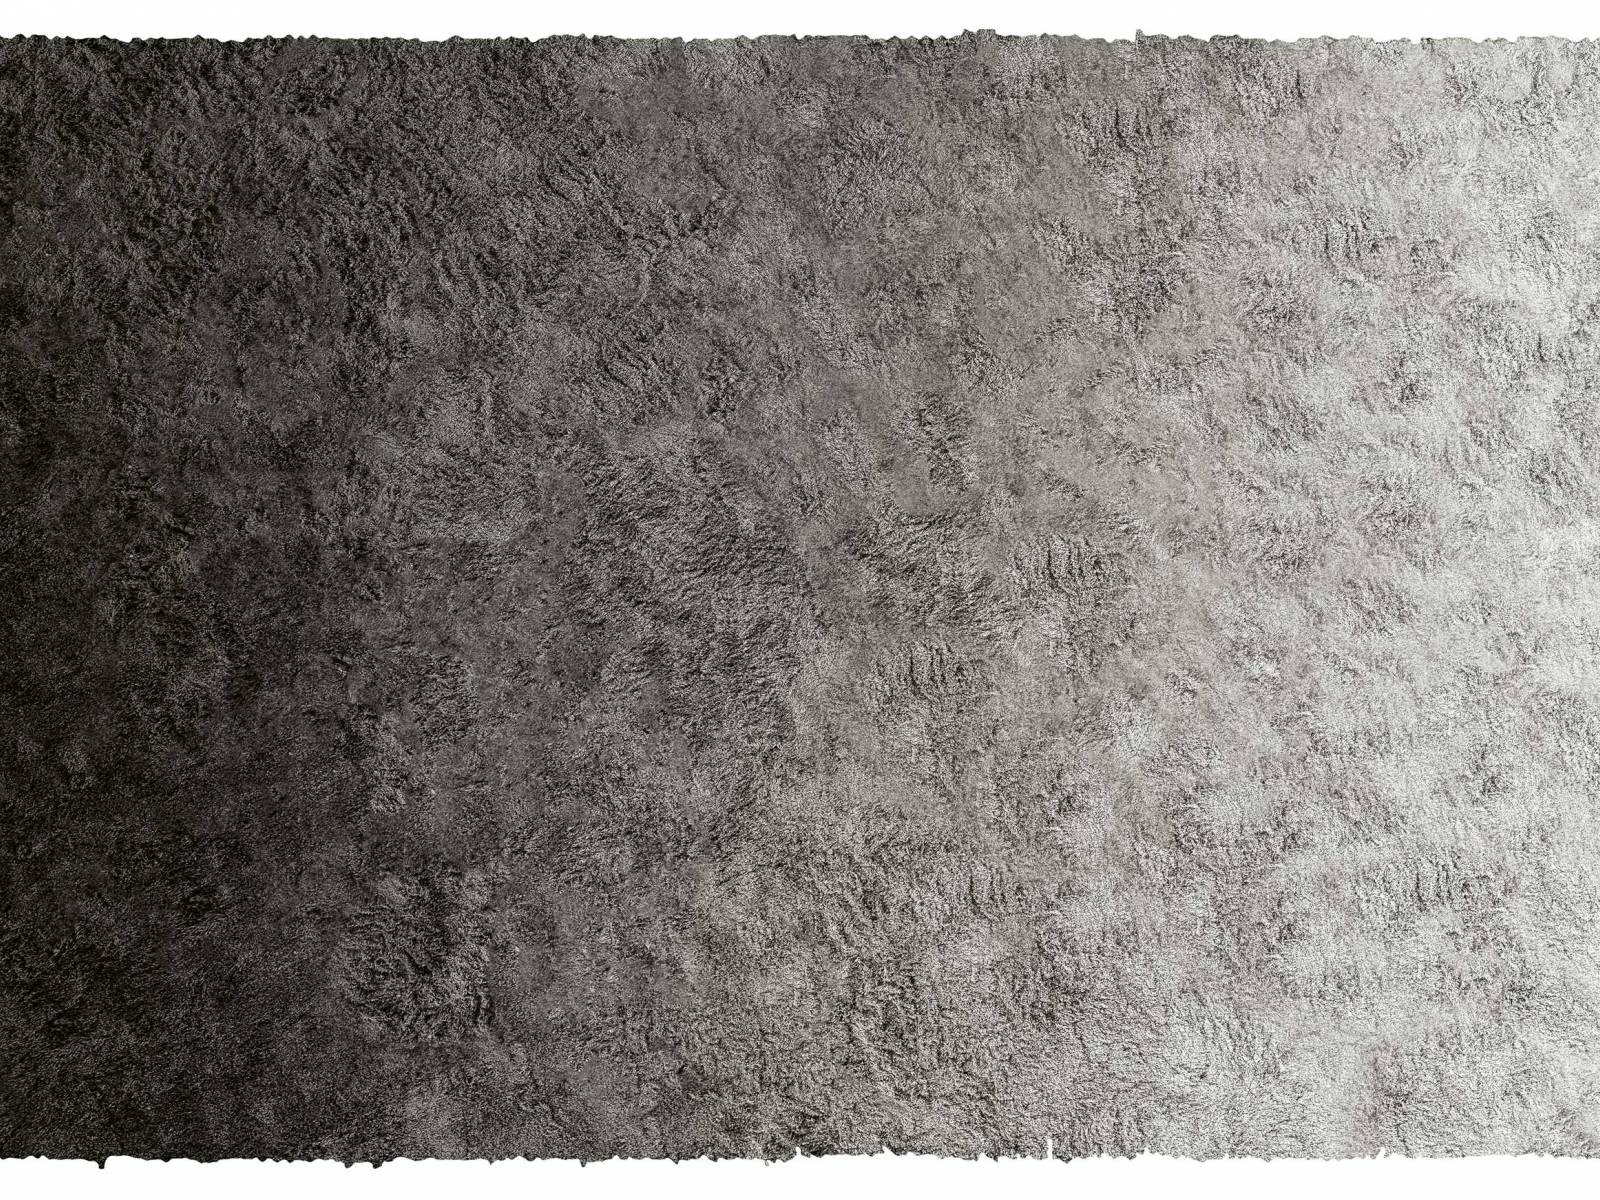 Durch die Kombination von seidenweichen Lyocell-Fasern und matten neuseeländischen Wollfasern ist dieser handgetuftete Teppich mit einem eleganten Degradé-Farbeffekt entstanden. Sein besonderes Erscheinungsbild verdankt er zudem der hohen Florhöhe von 4,5 Zentimetern. «Wisp Rainbow» ist nicht nur dekorativ, sondern absorbiert zudem Feuchtigkeit und reguliert die Raumakustik. Erhältlich in den Farben Asche und Rauch. Minotti.